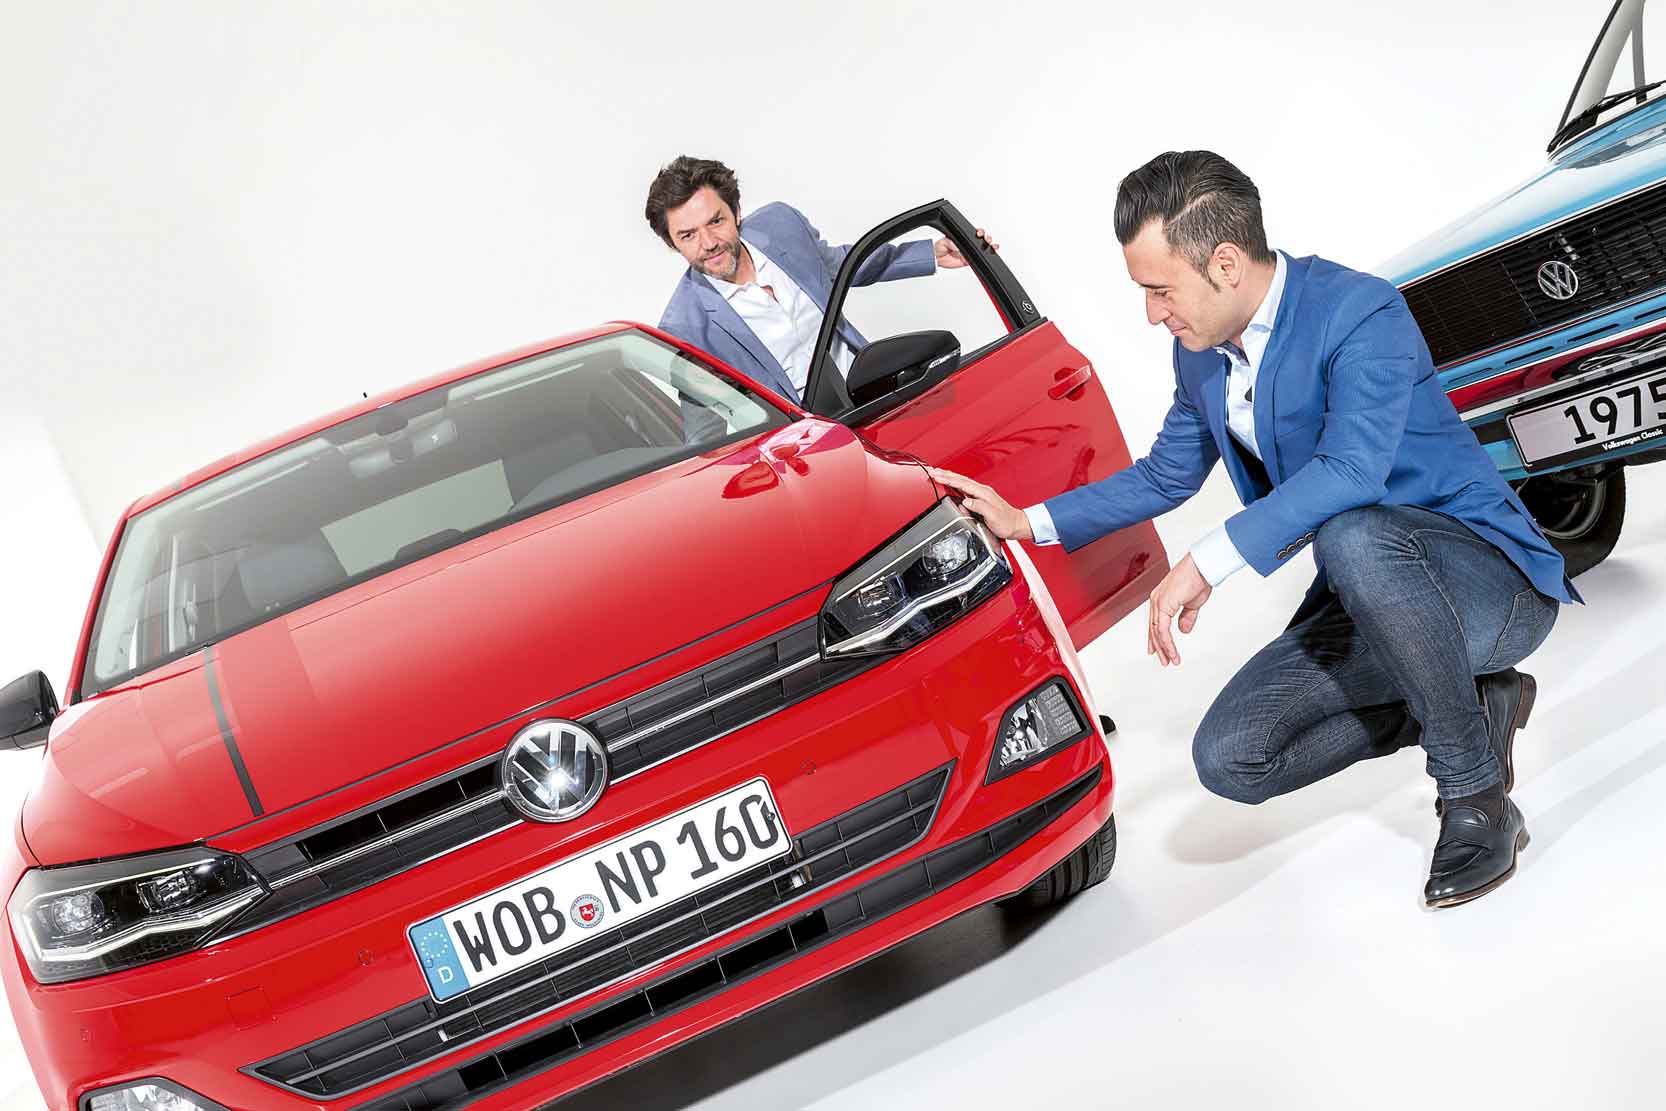 Image principale de l'actu: La nouvelle Polo GTI de Volkswagen est à l'IAA